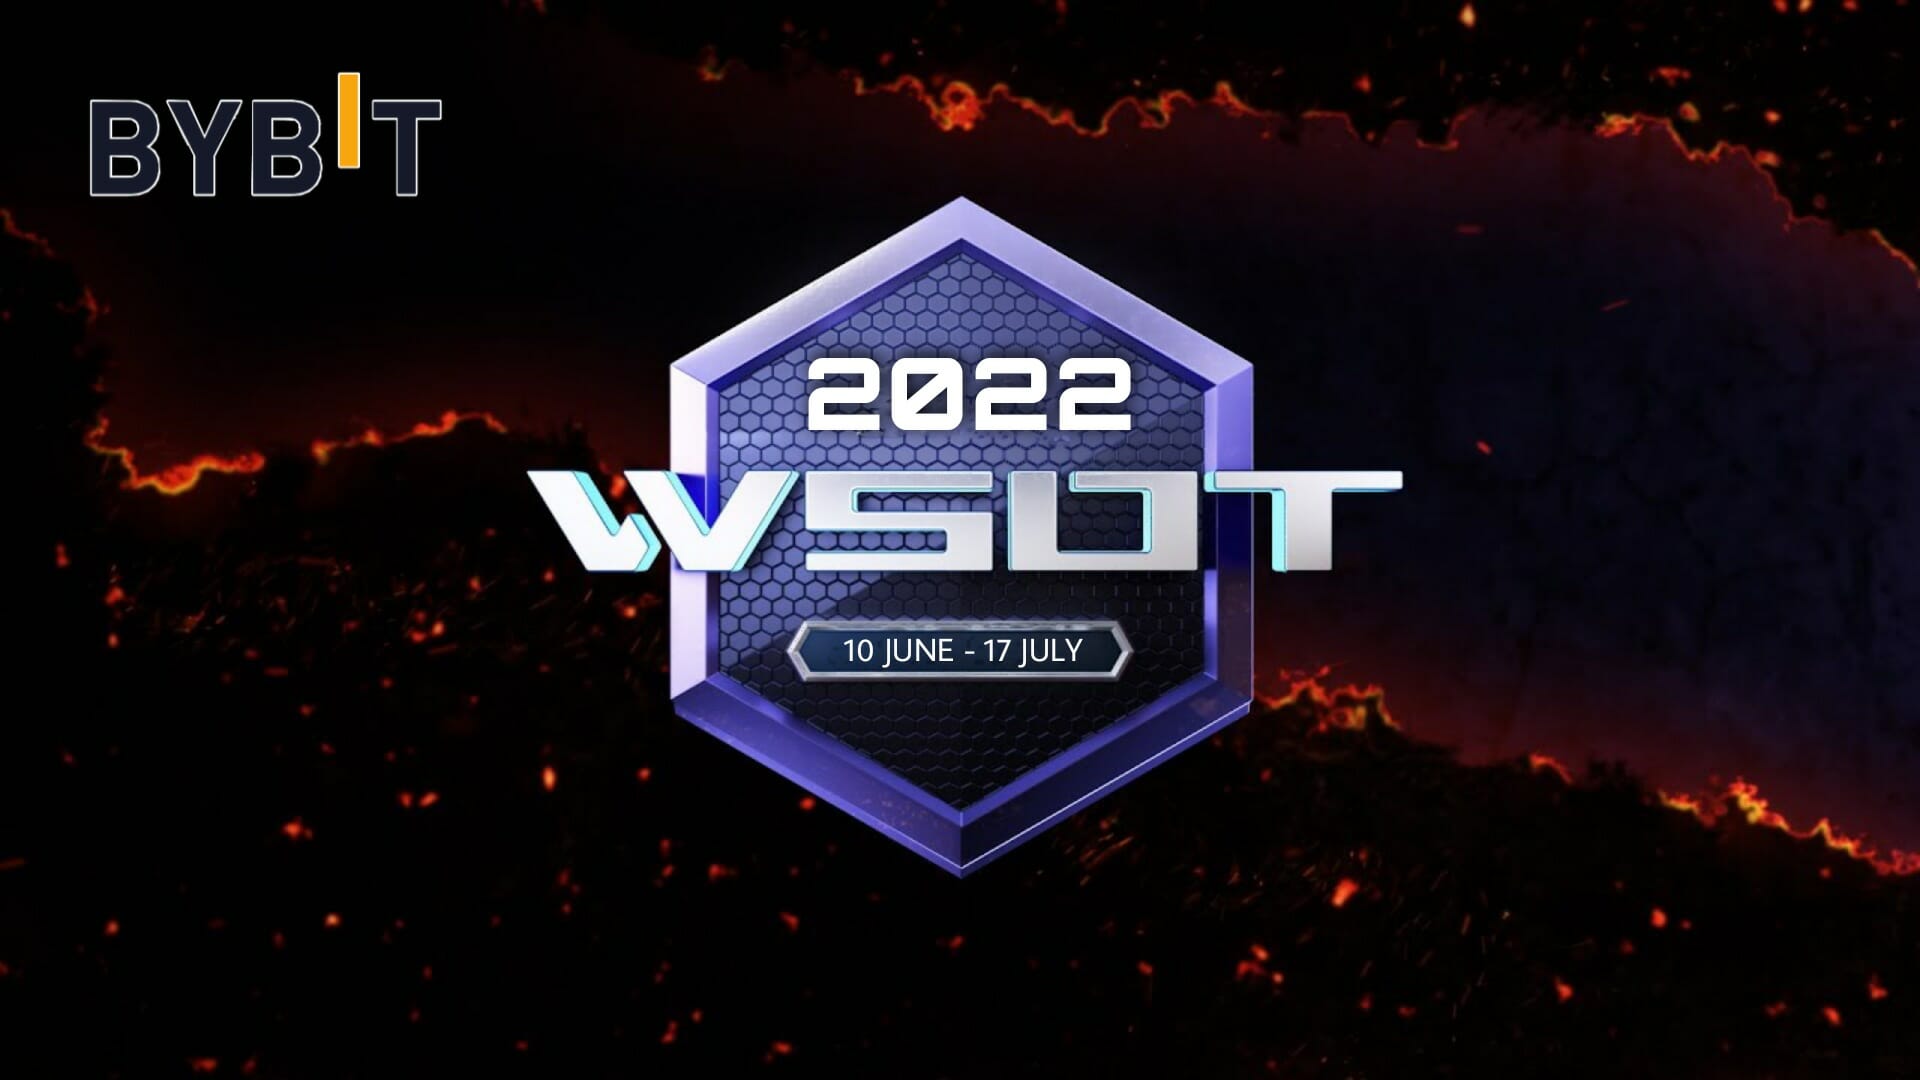 أعلنت Bybit عن مسابقة التداول السنوية WSOT 2022 بمجموع جوائز تصل إلى 8 ملايين دولار